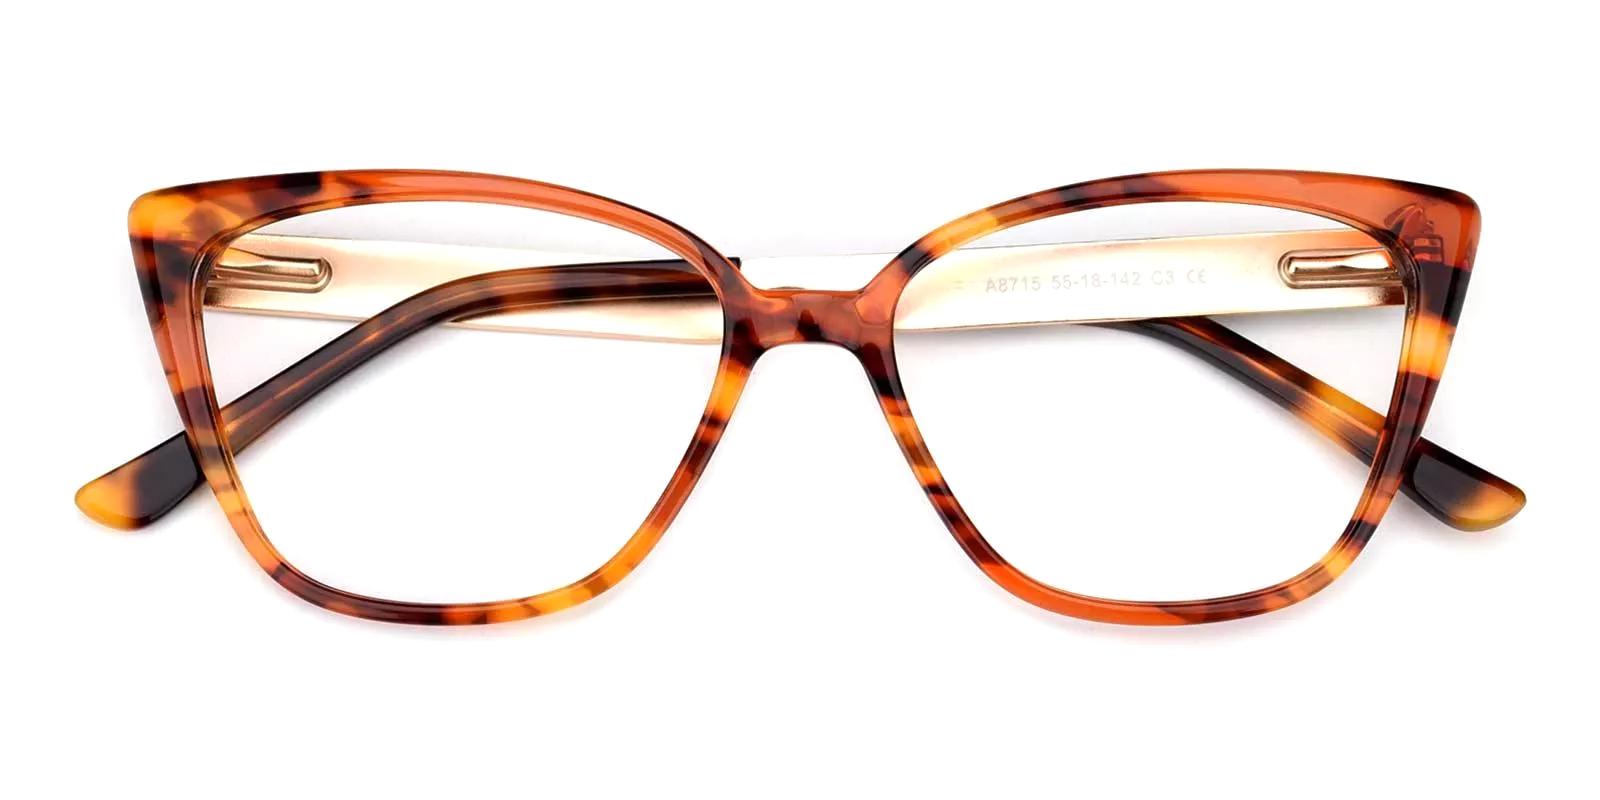 Fari Tortoise Acetate Eyeglasses , UniversalBridgeFit Frames from ABBE Glasses